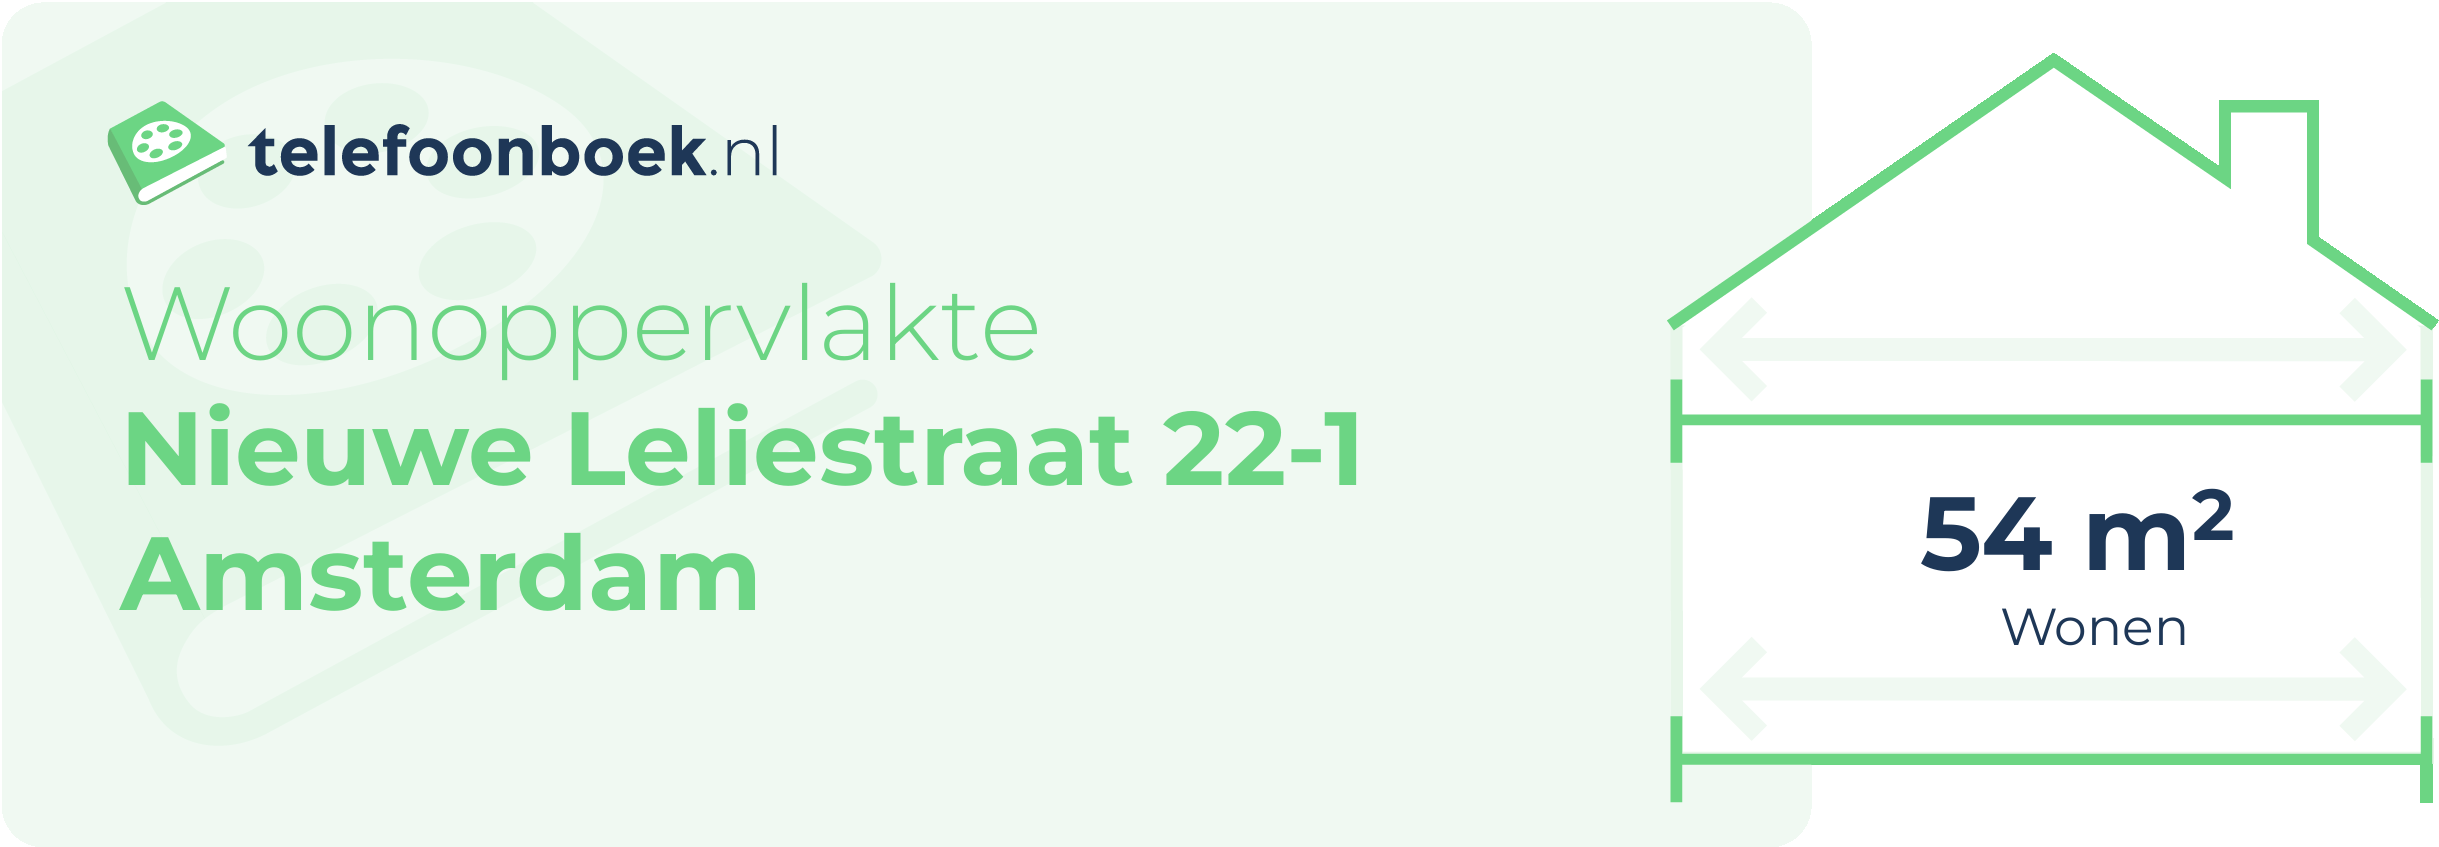 Woonoppervlakte Nieuwe Leliestraat 22-1 Amsterdam